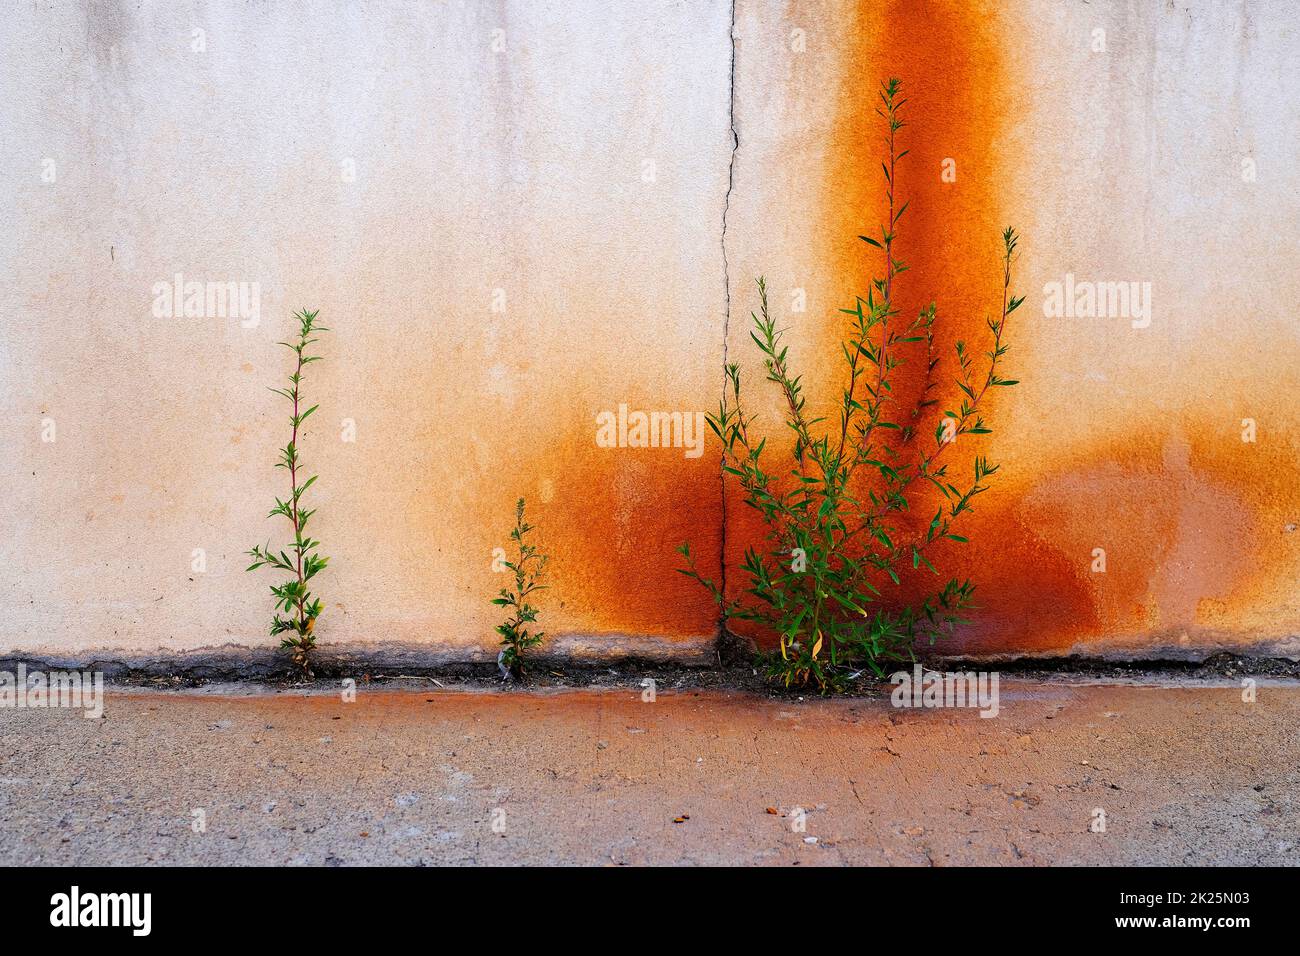 Las malas hierbas crecen en la grieta de la acera con la pared oxidada Foto de stock